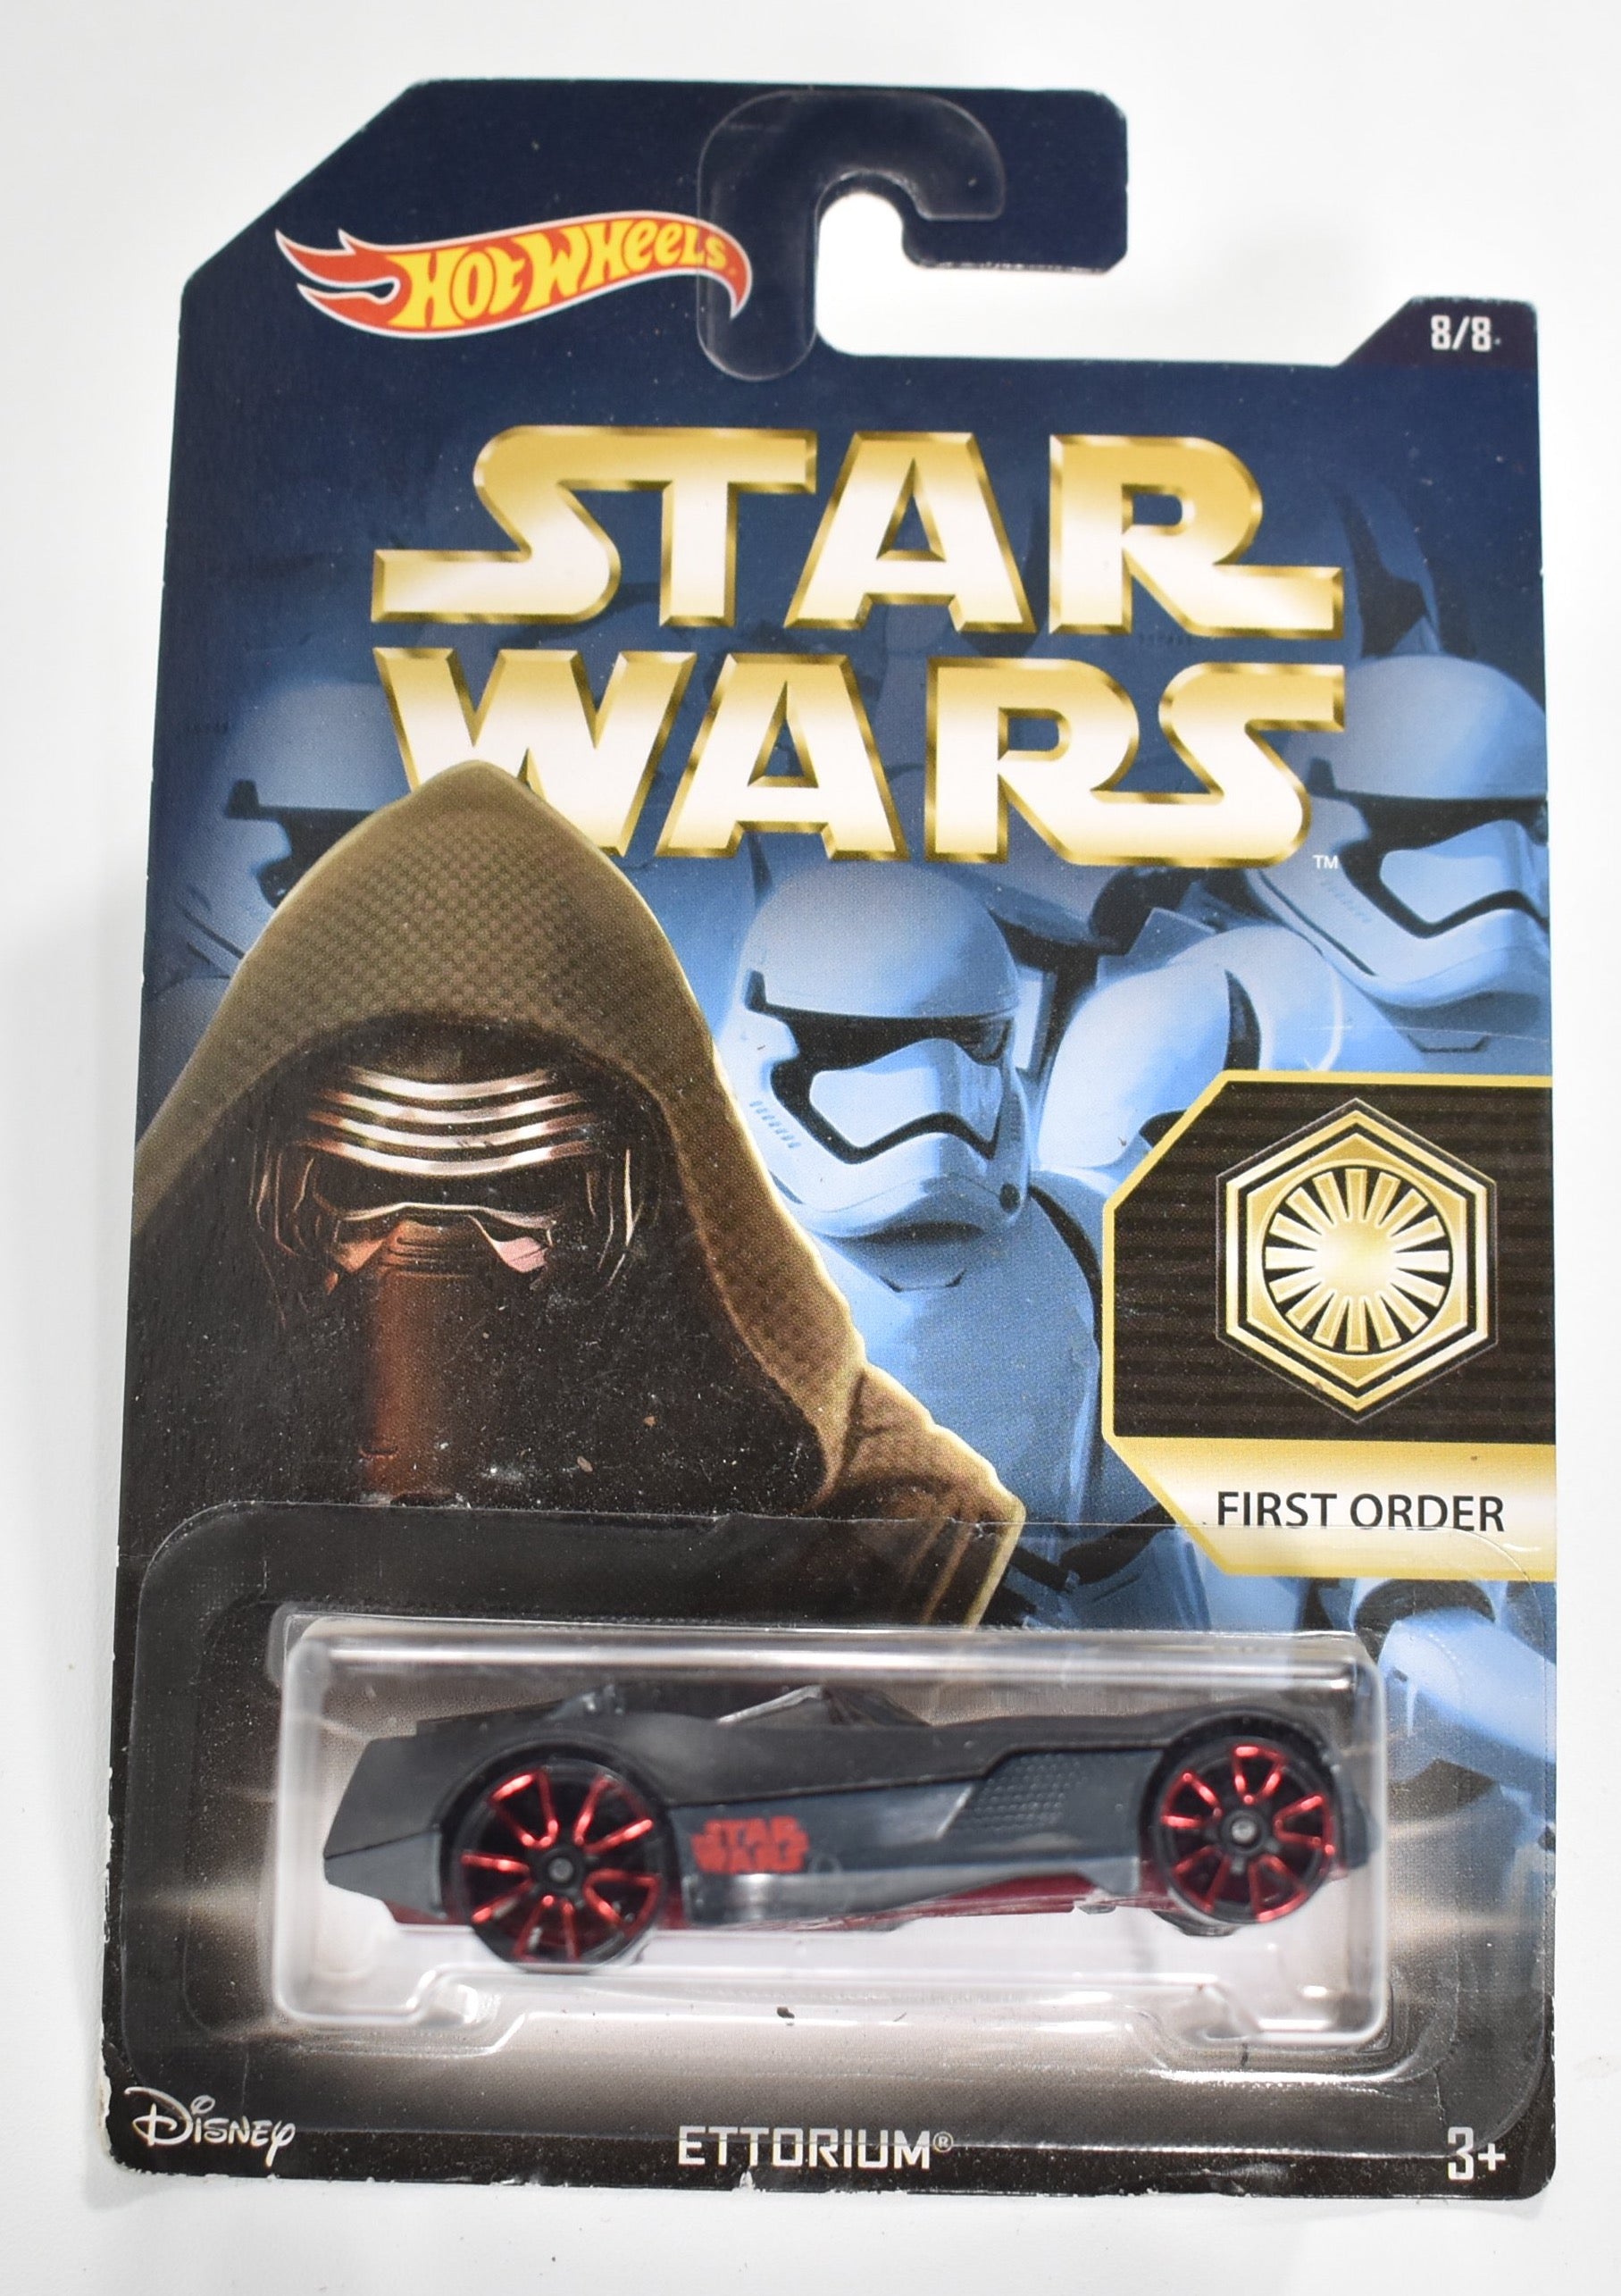 Hot Wheels diecast car Star Wars Ettorium First Order 8/8